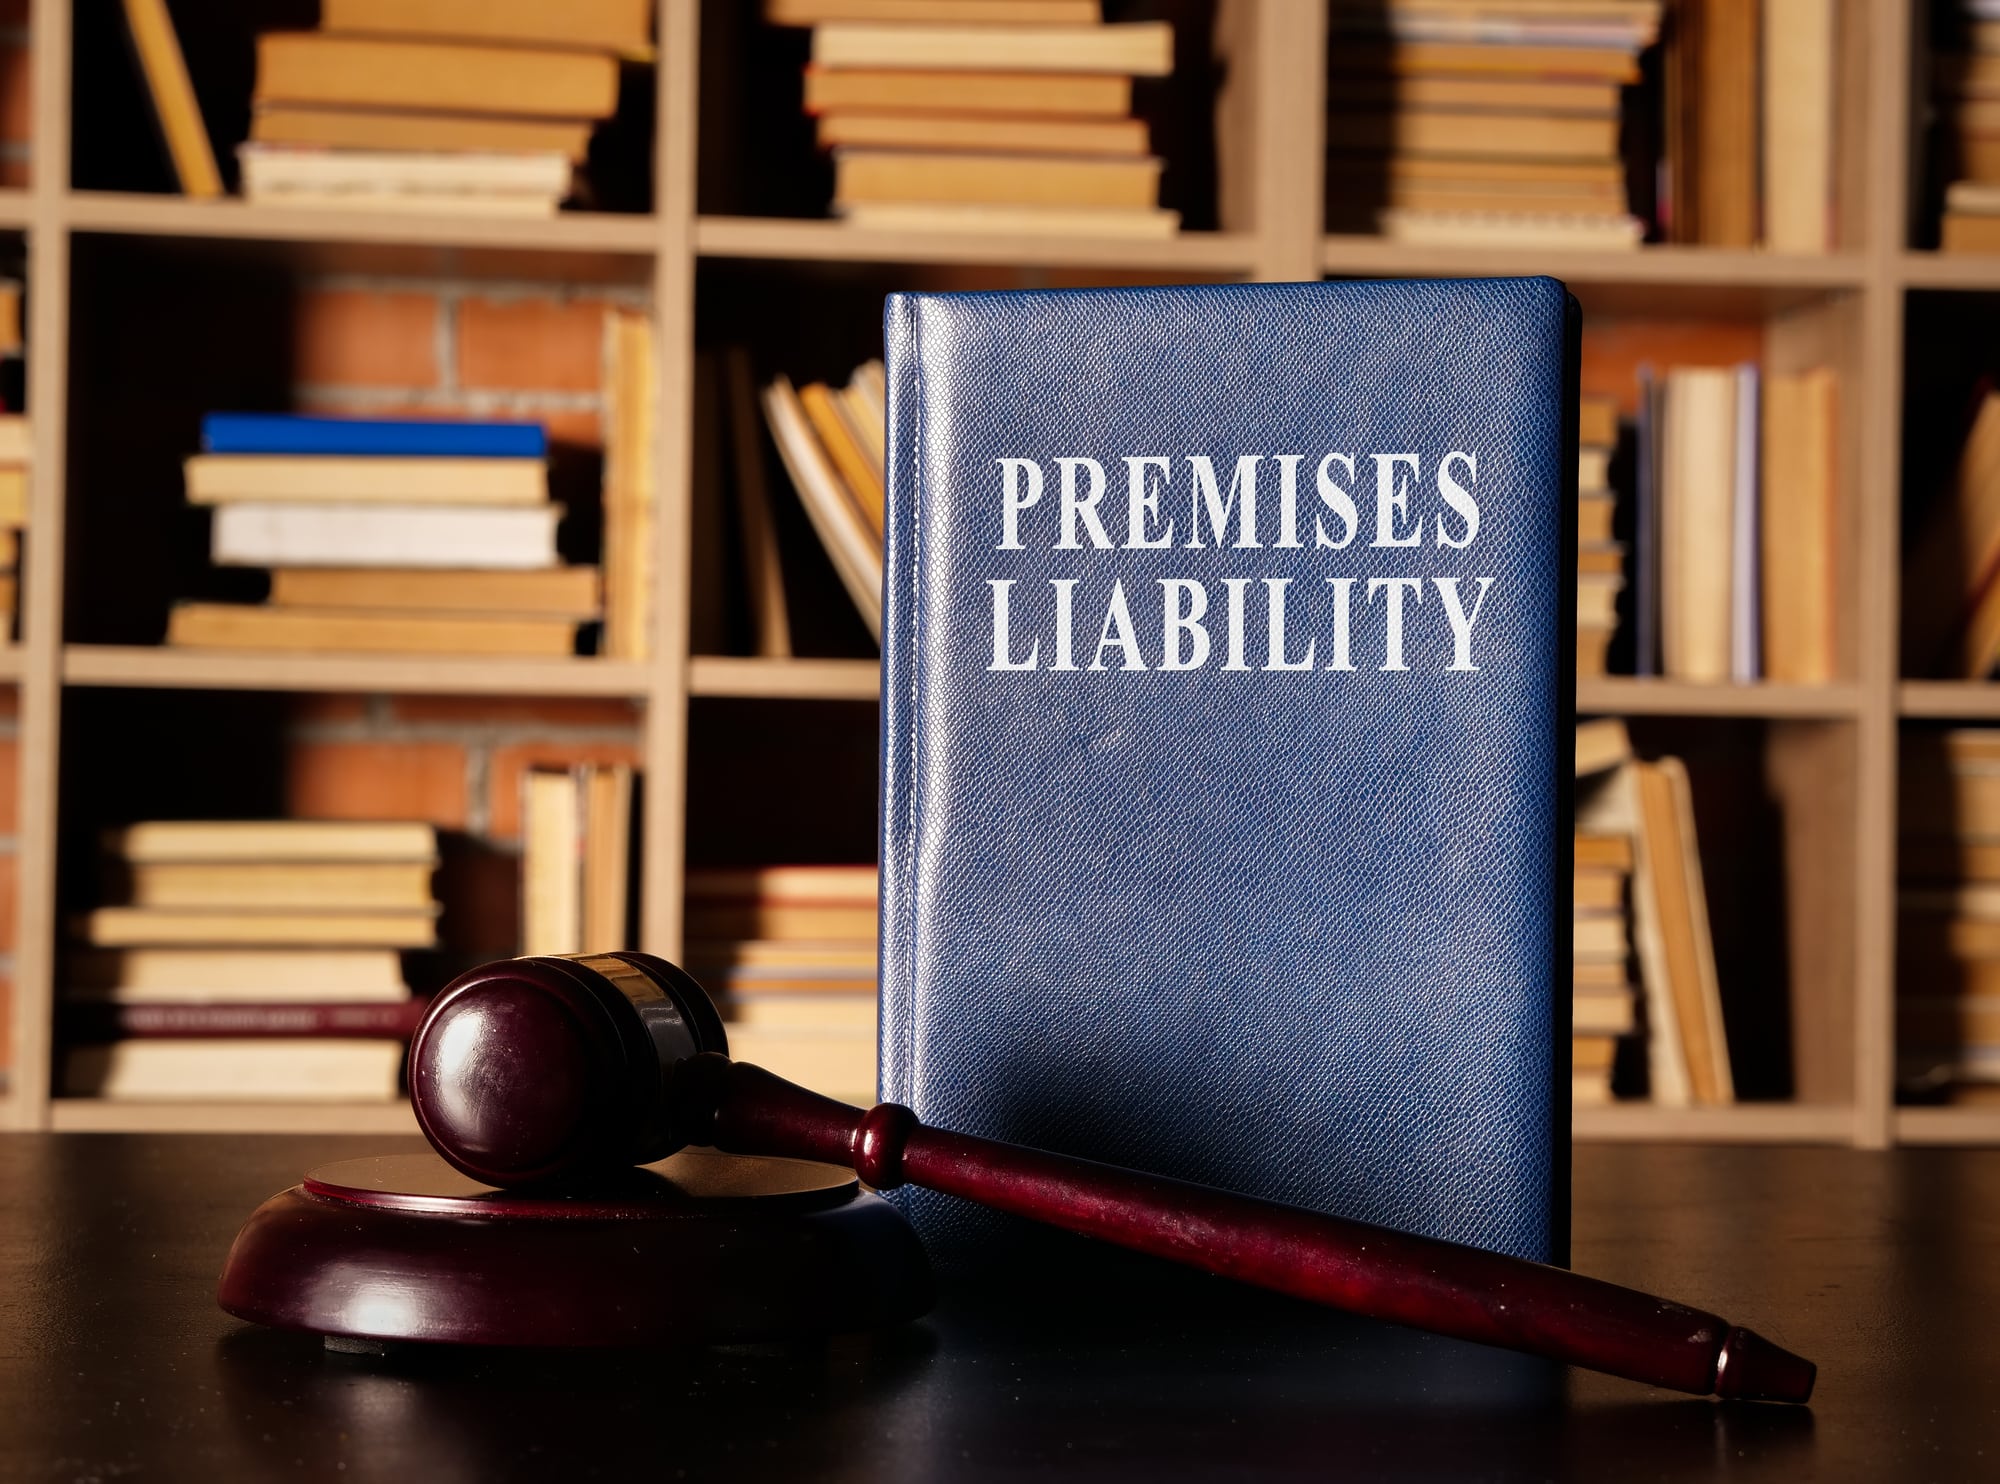 Public vs. Private Property: How Premises Liability Changes